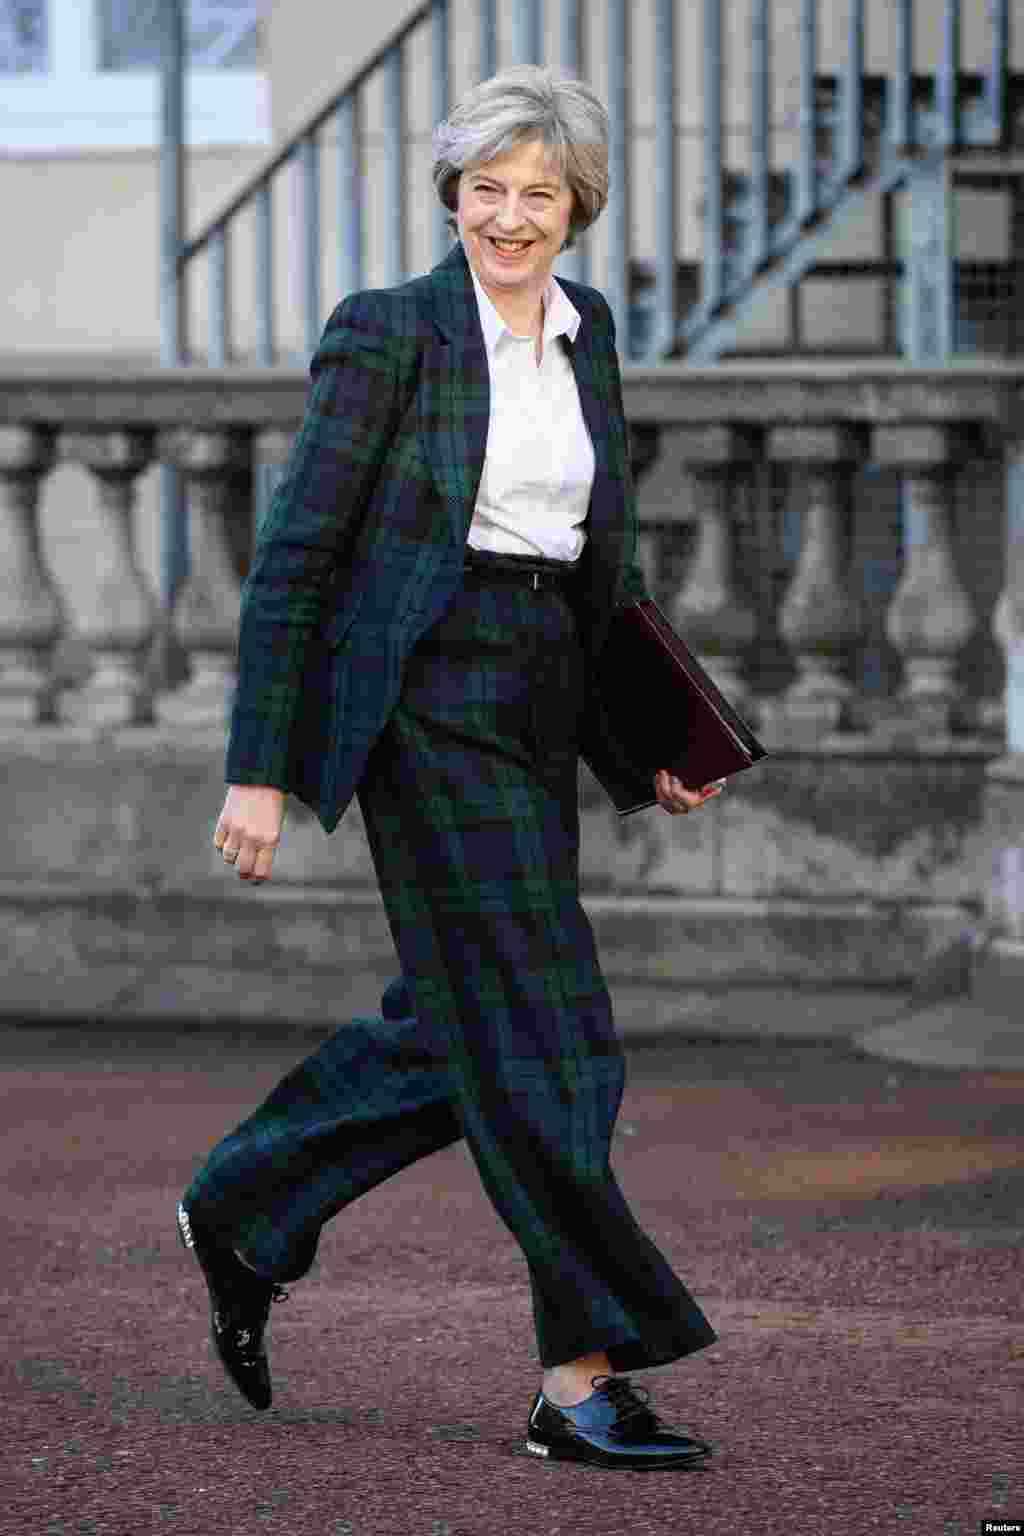 테레사 메이 영국 총리가 유럽연합(EU) 단일 시장을 완전히 떠날 것을 선언하는 연설을 위해 런던 랭캐스터 하우스에 도착하고 있다.